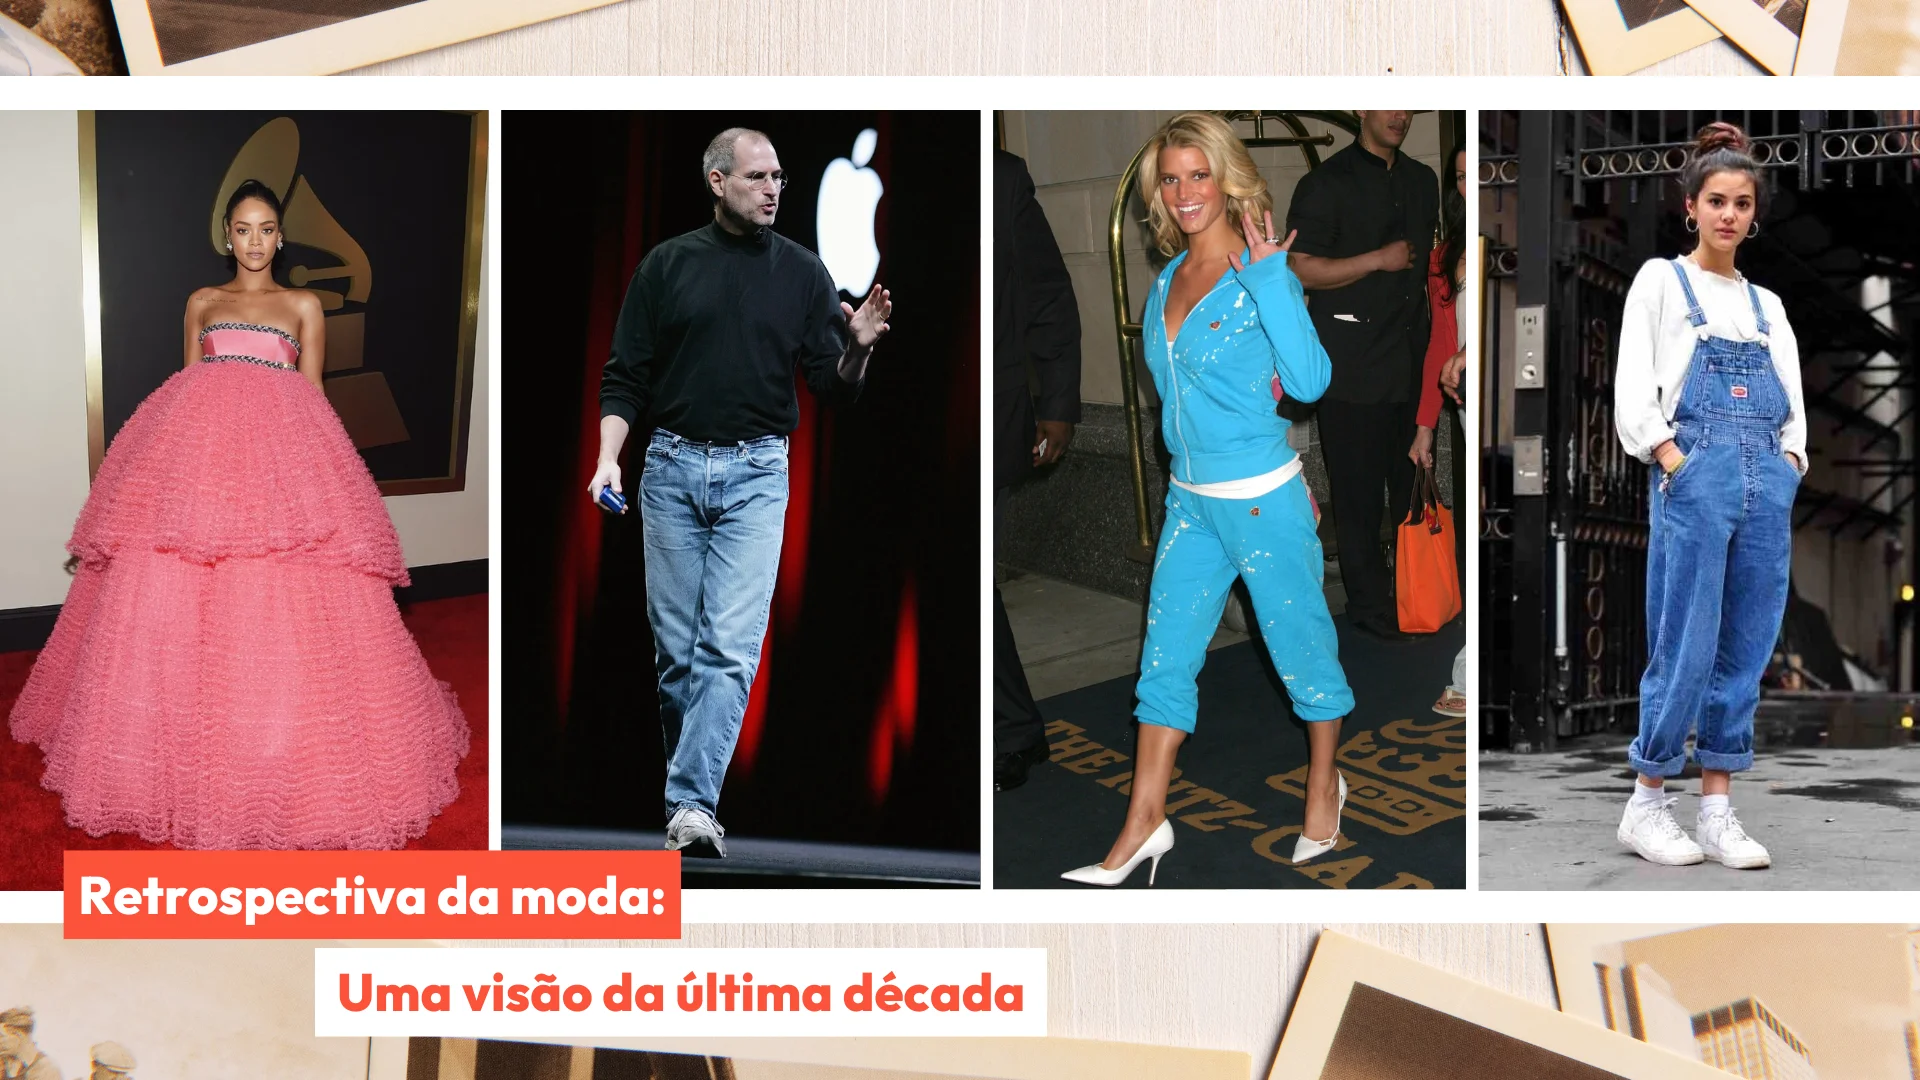 Adidas Samba: No pé de 9 entre 10 fashionistas - Blog DazRoupaz